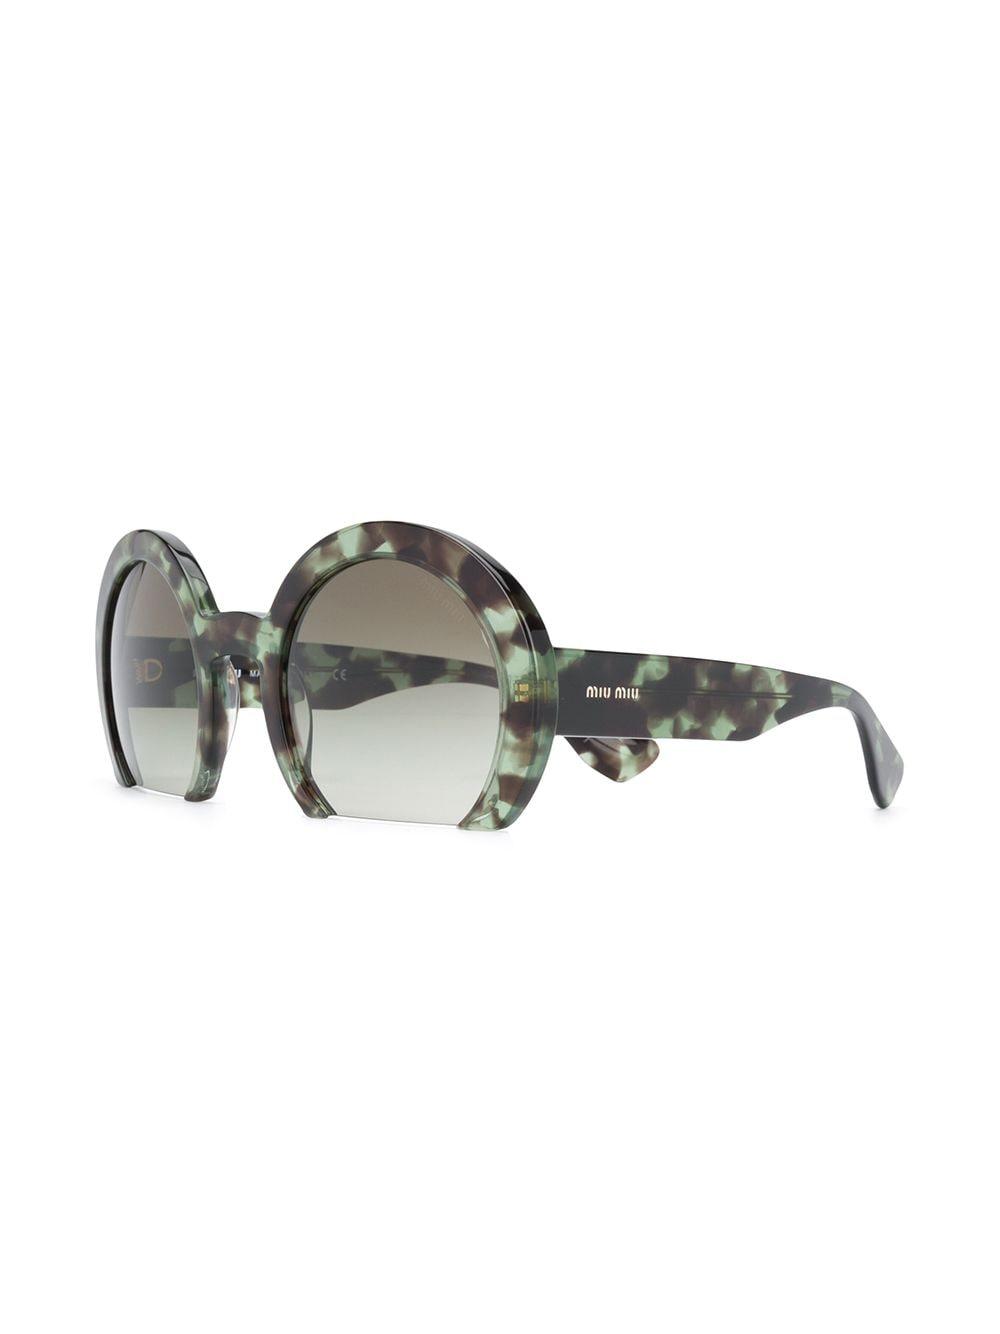 Miu Miu Cut-off Round Sunglasses in Green | Lyst UK